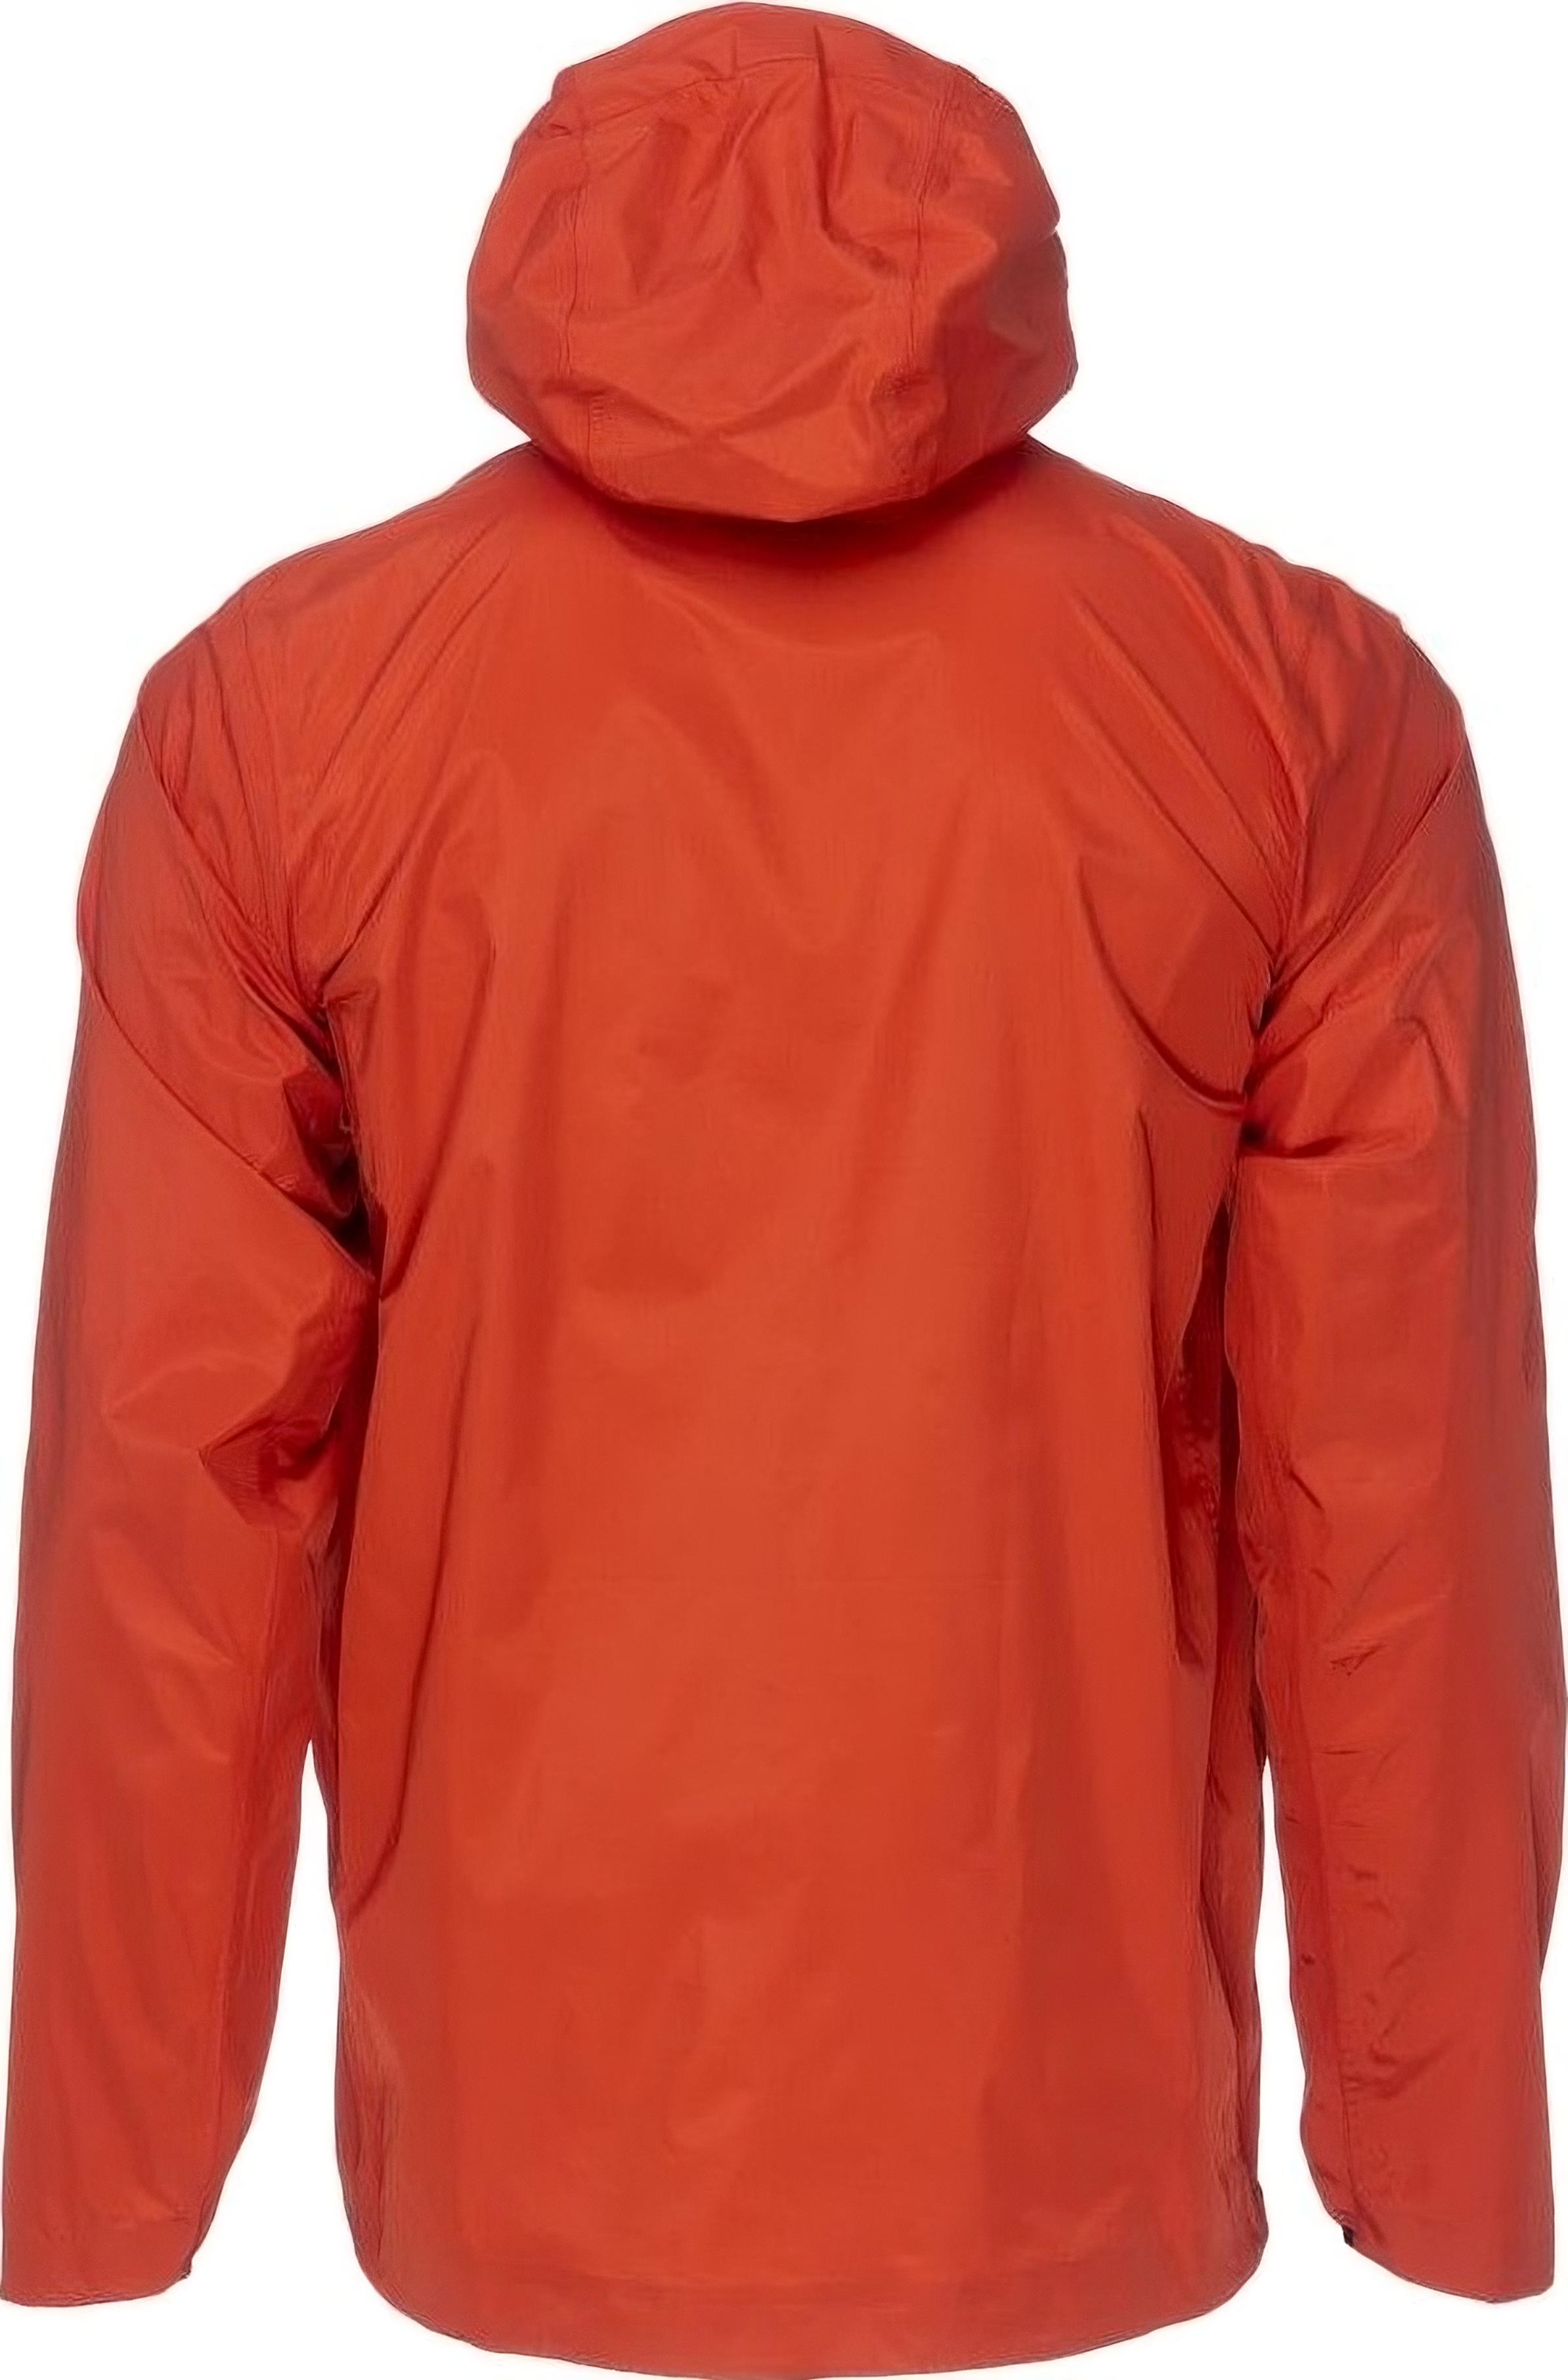 Куртка женская Turbat Isla Wmn orange red S красный фото 3